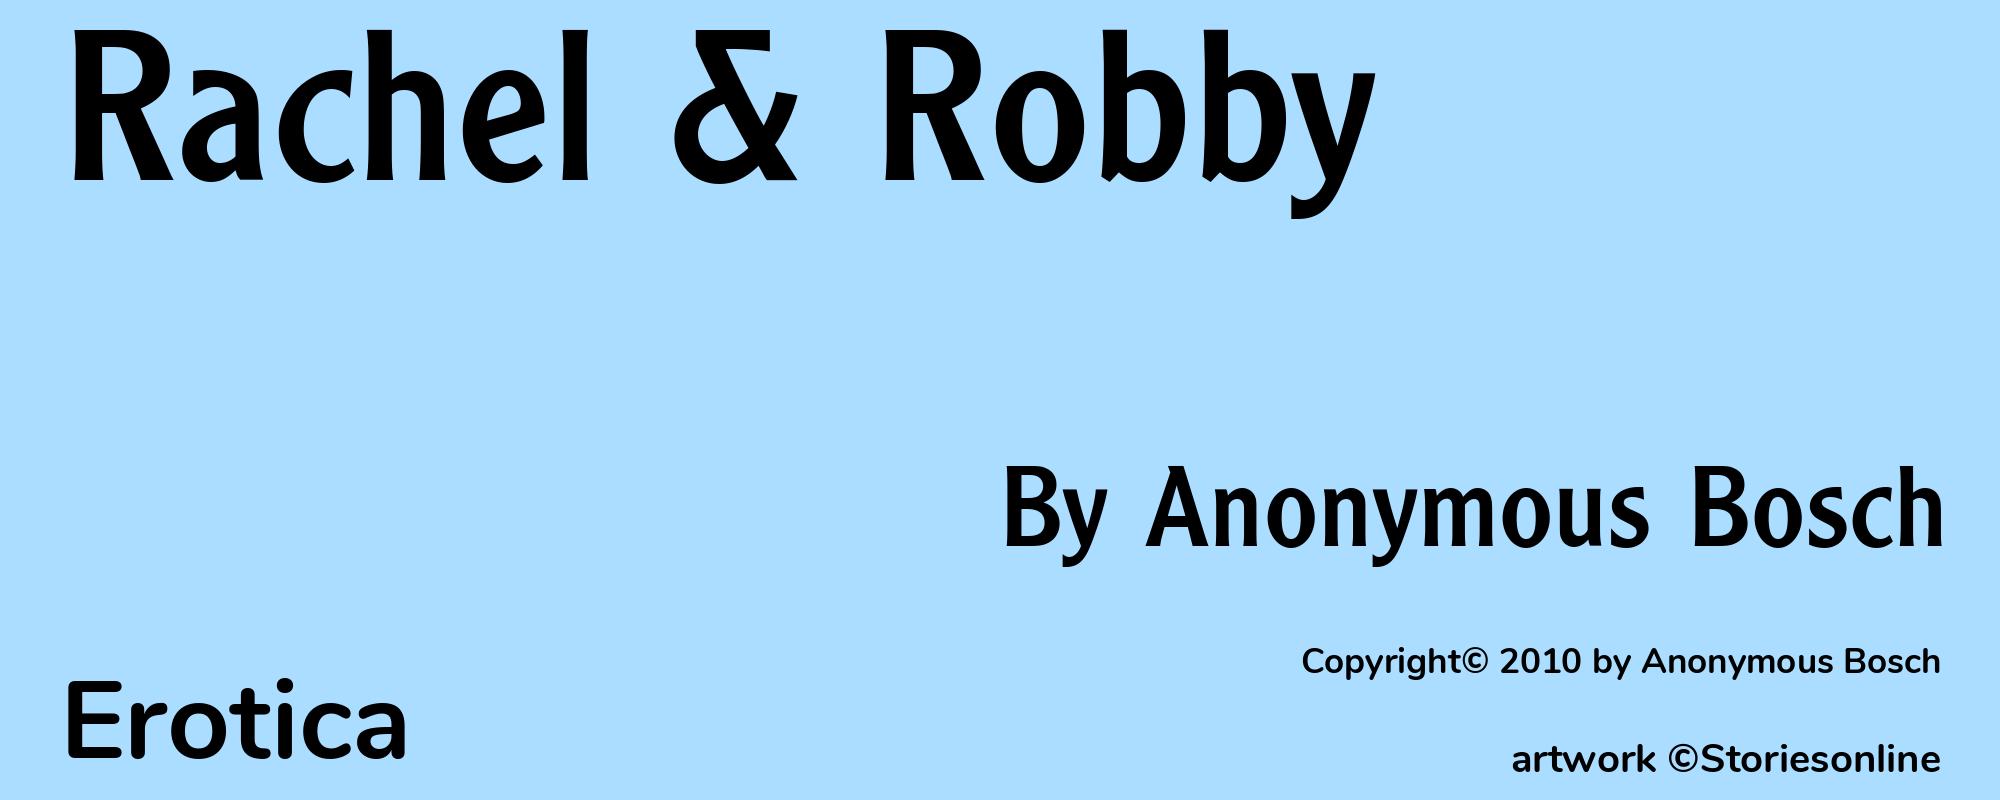 Rachel & Robby - Cover